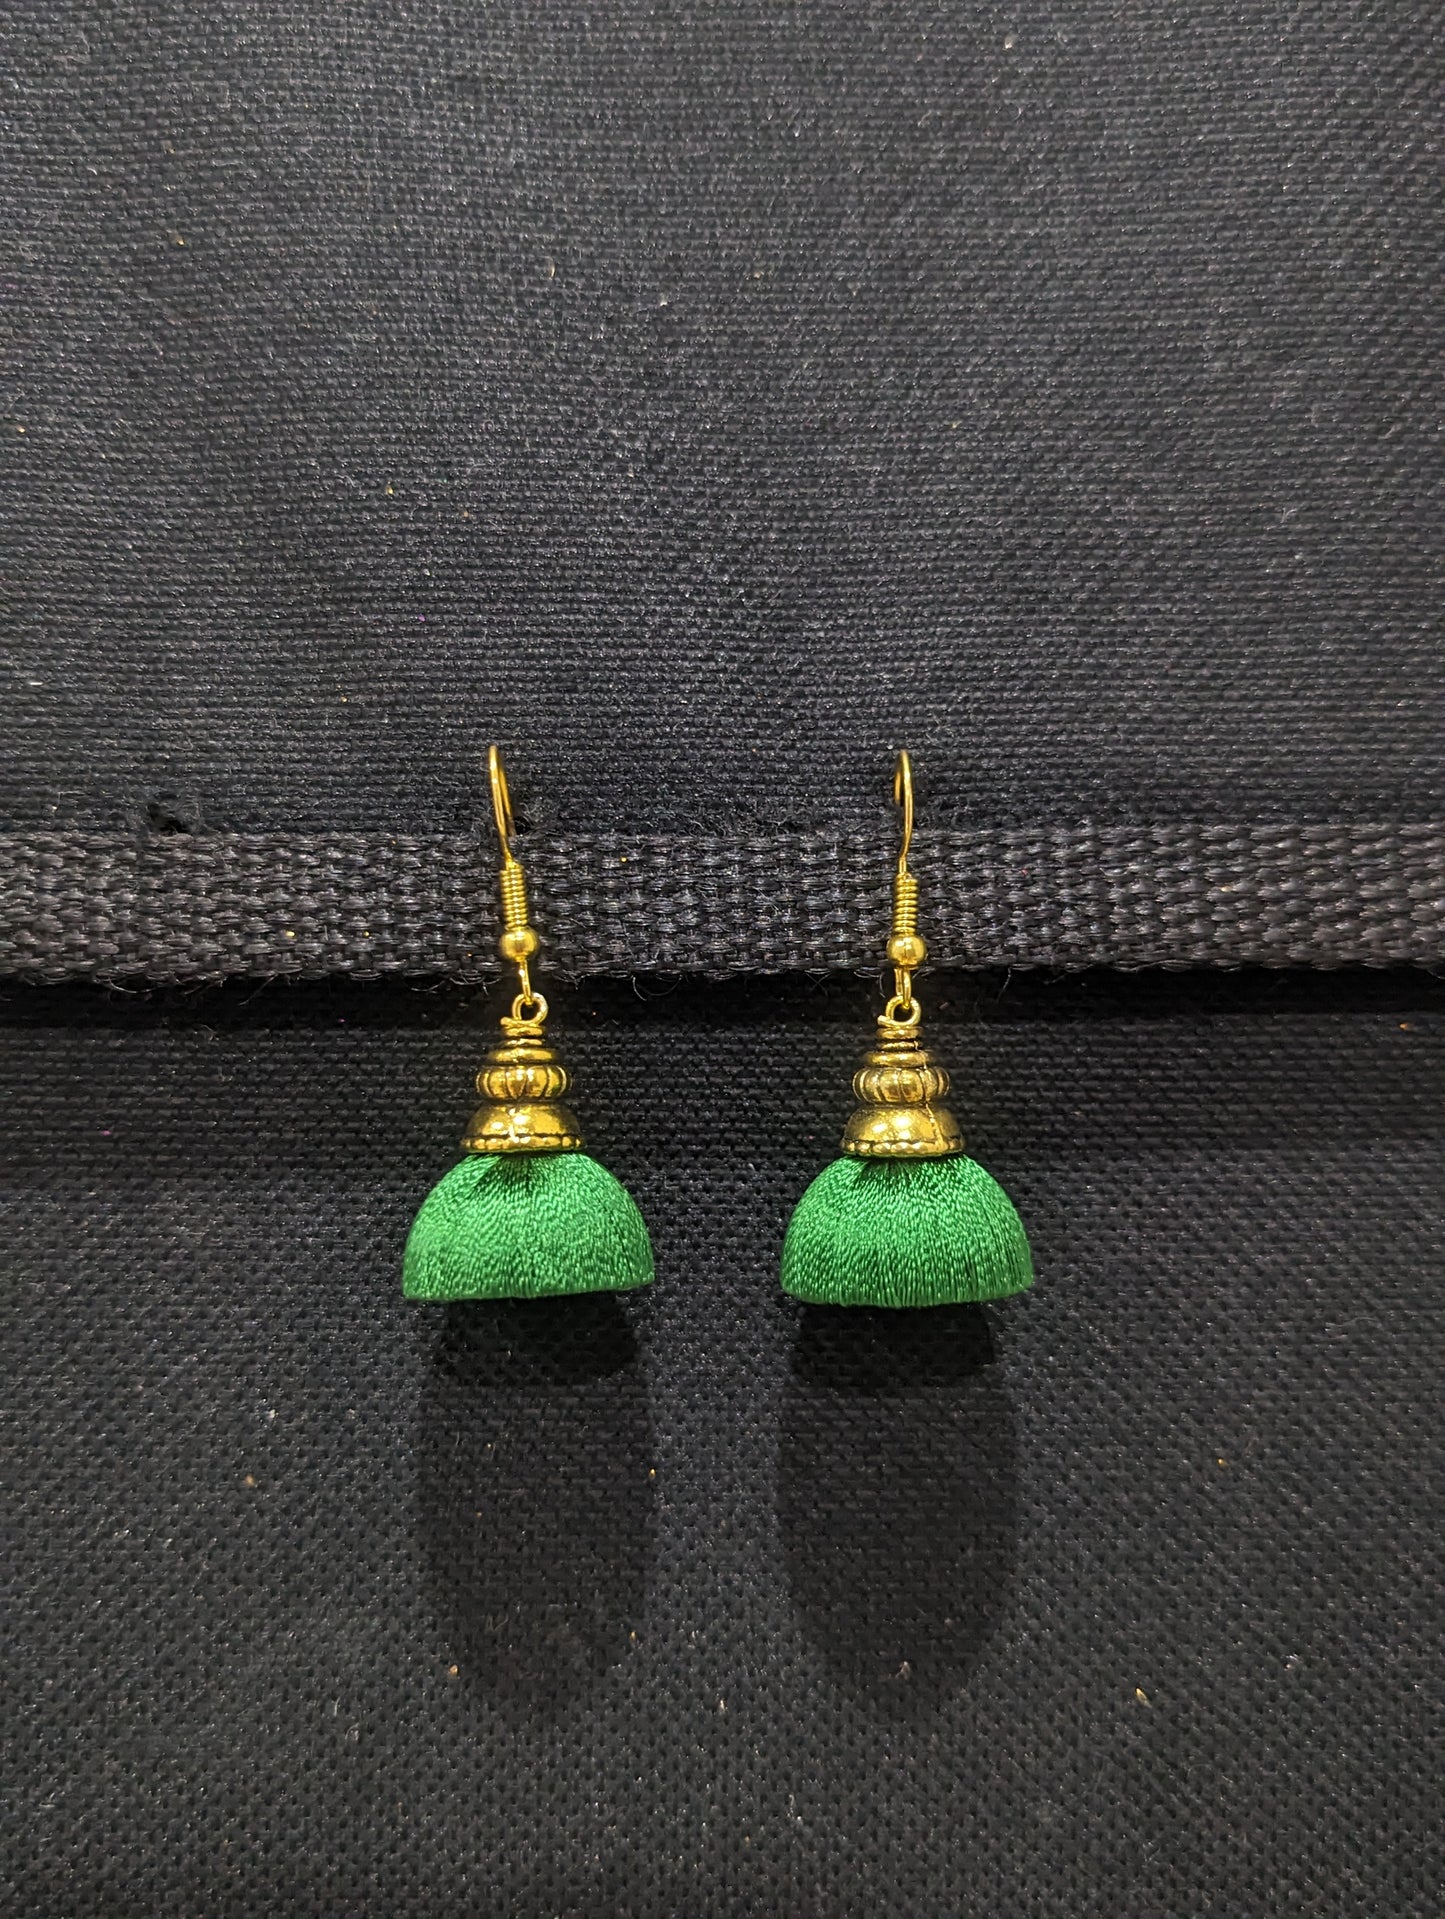 Silk Thread Gold cap small Jhumka Earrings - Simpliful